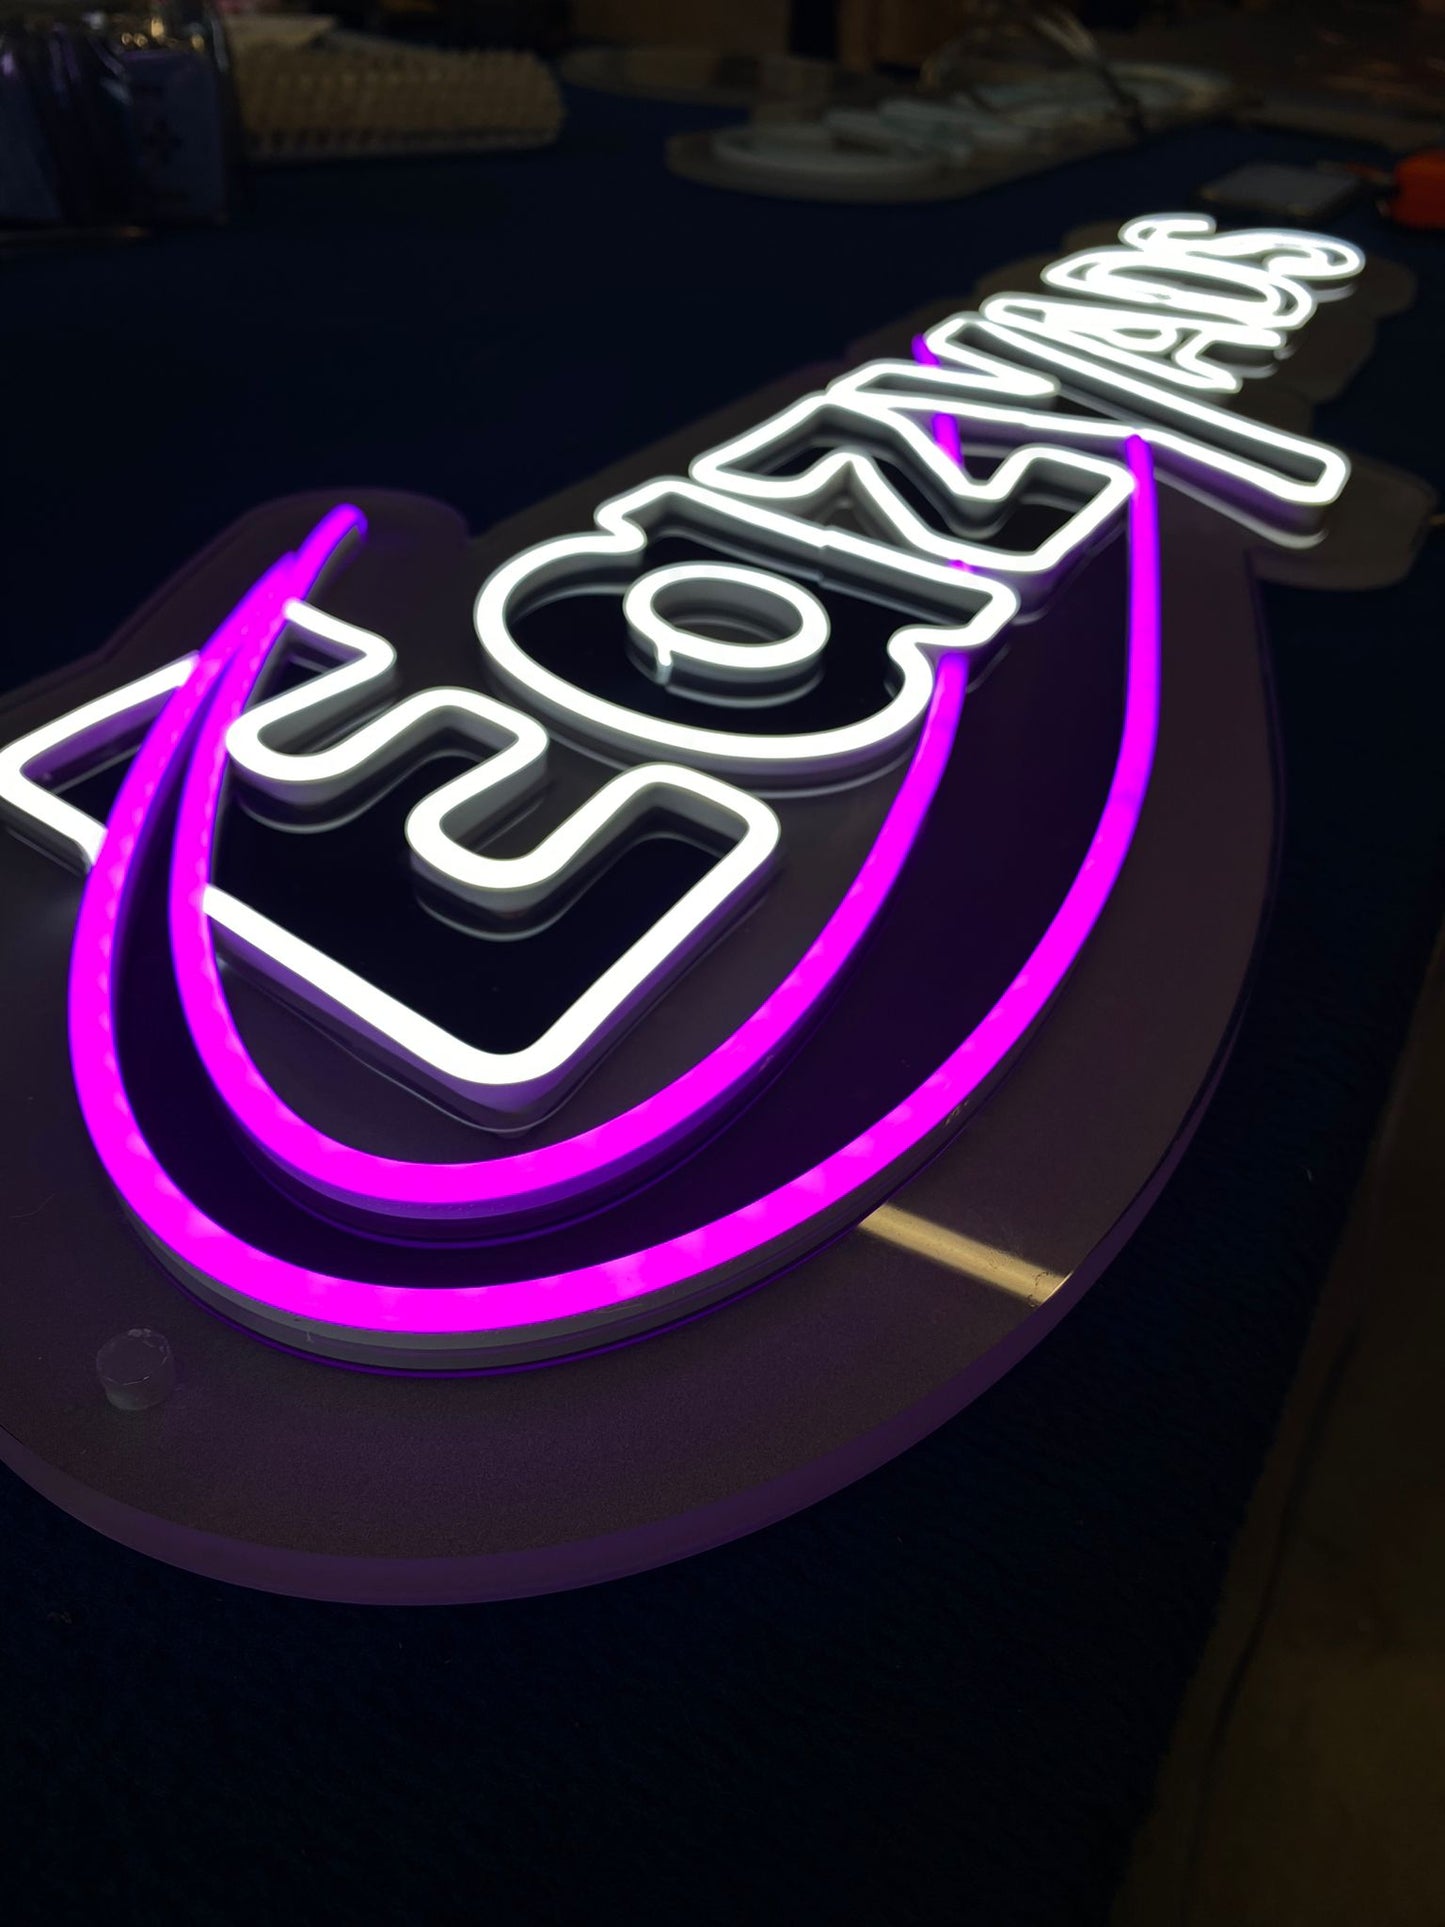 Logo neon led personalizzato